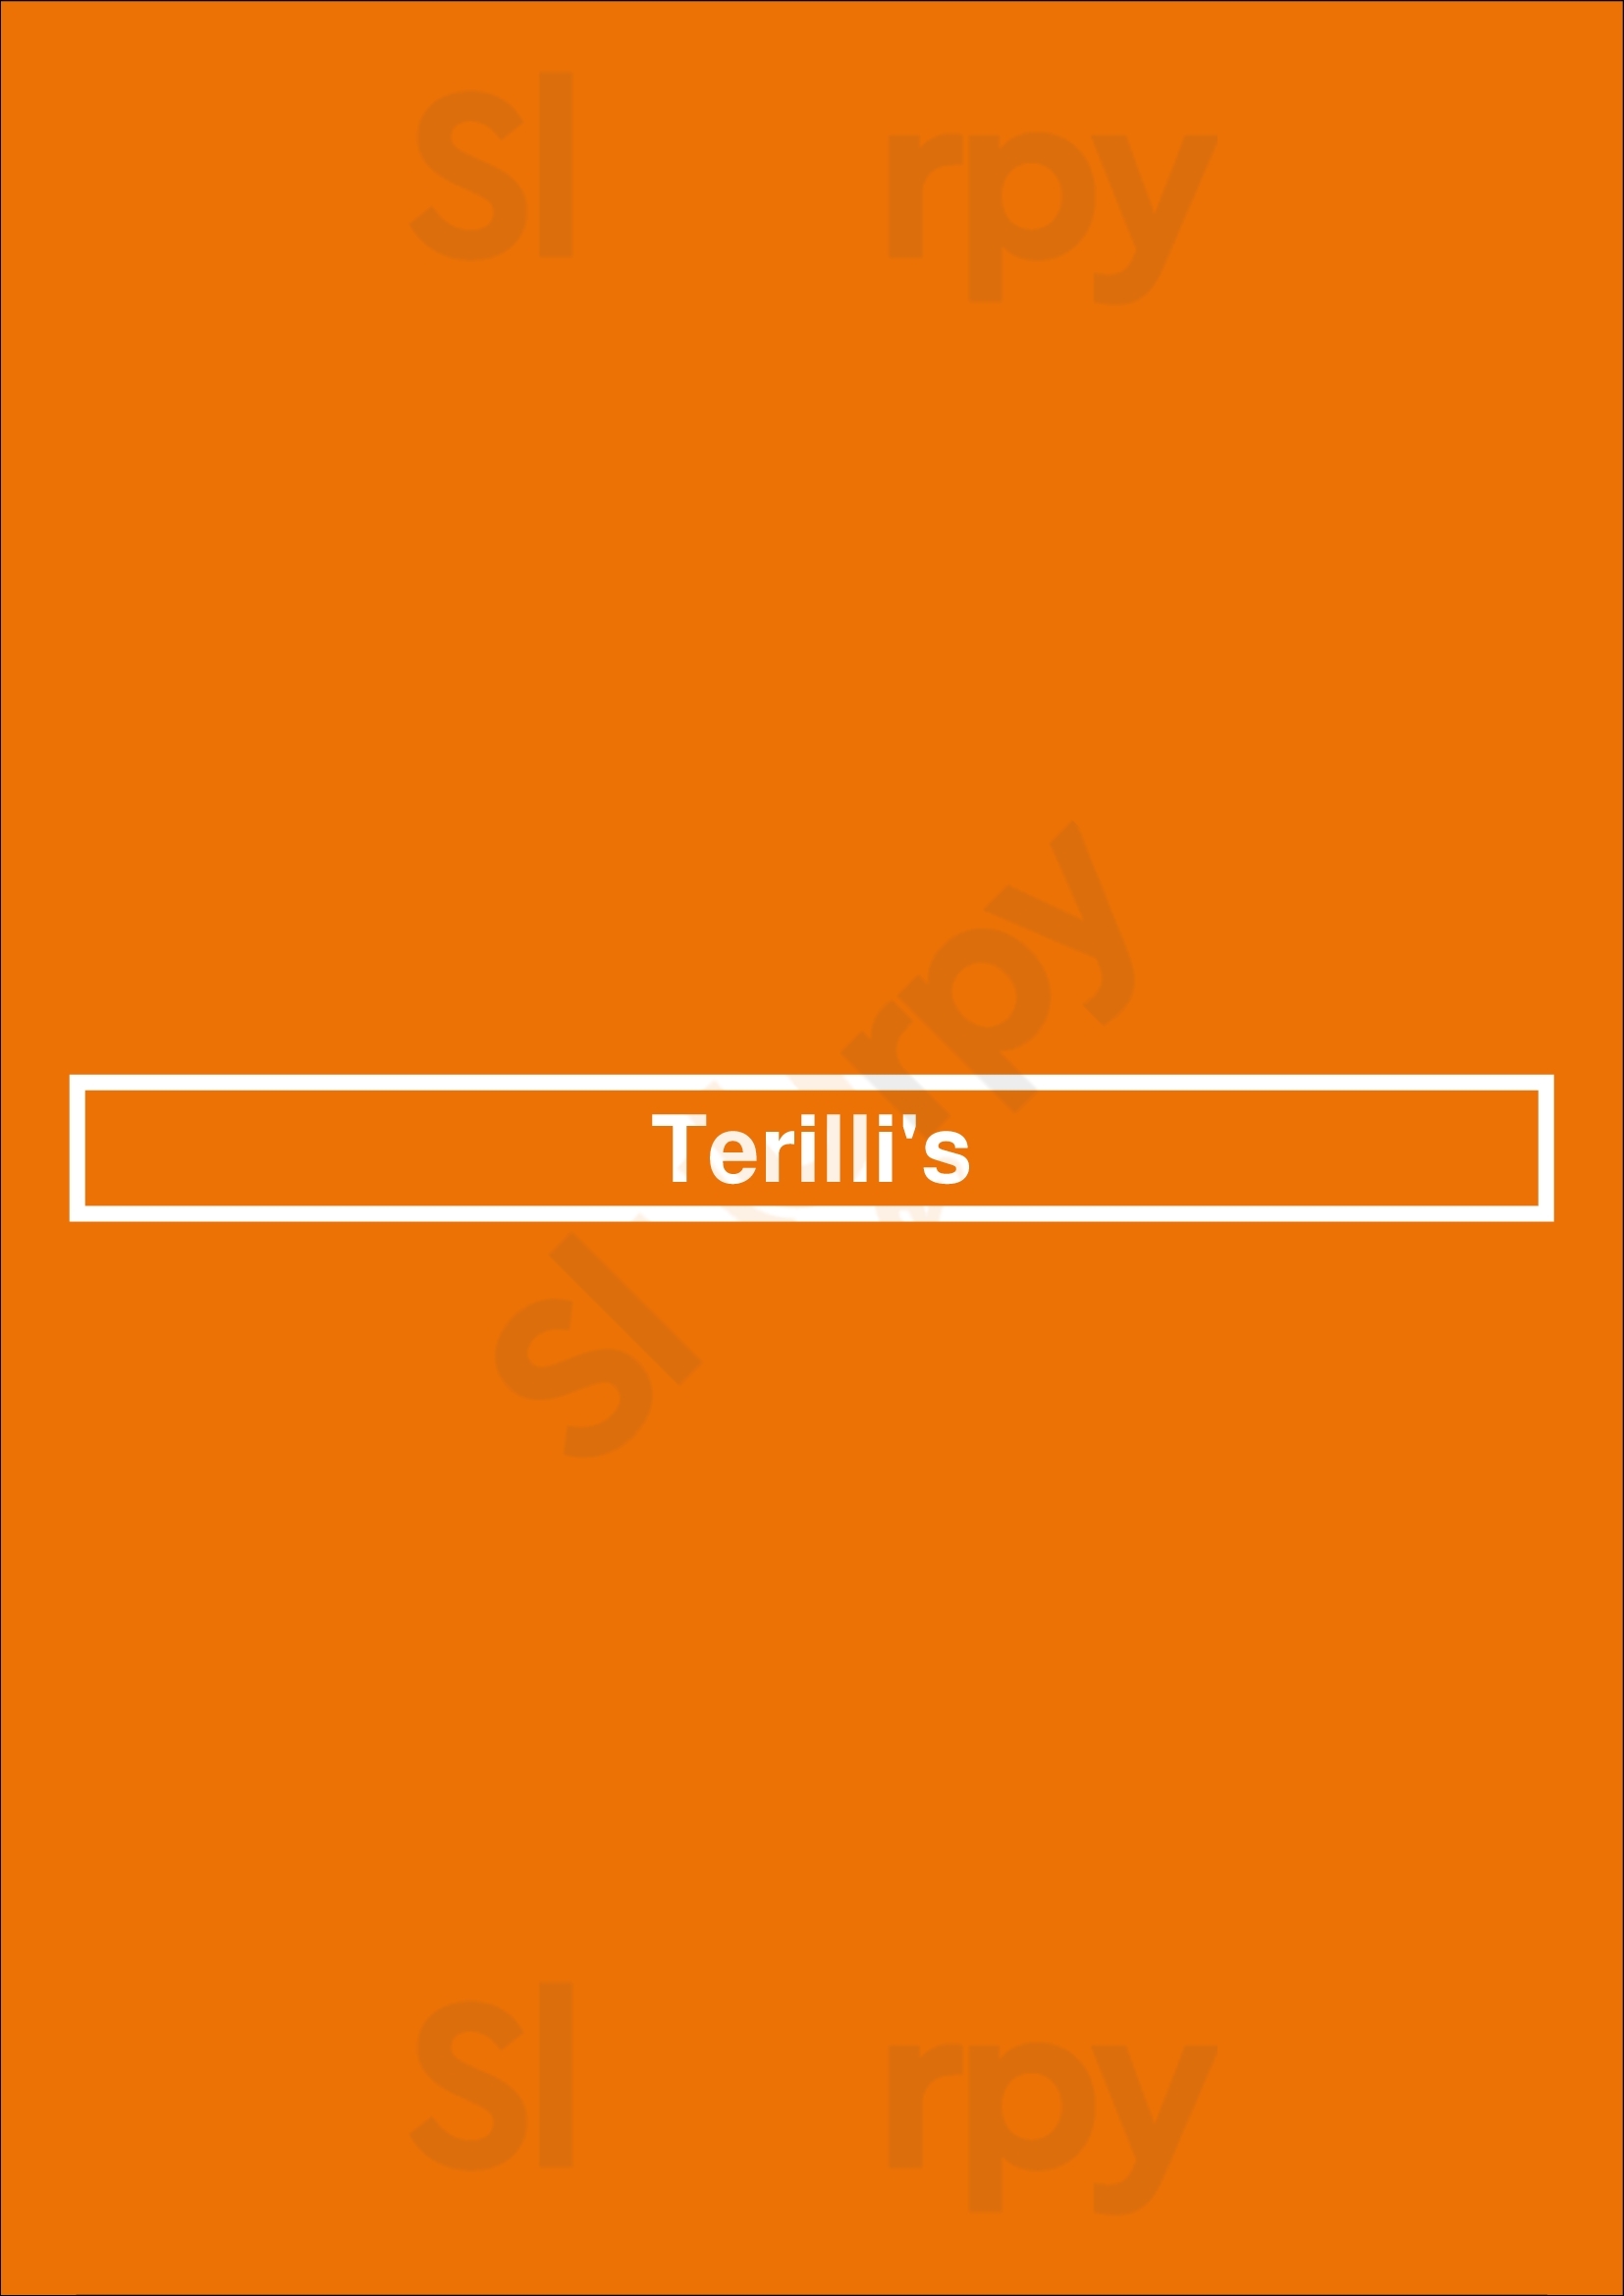 Terilli's Dallas Menu - 1